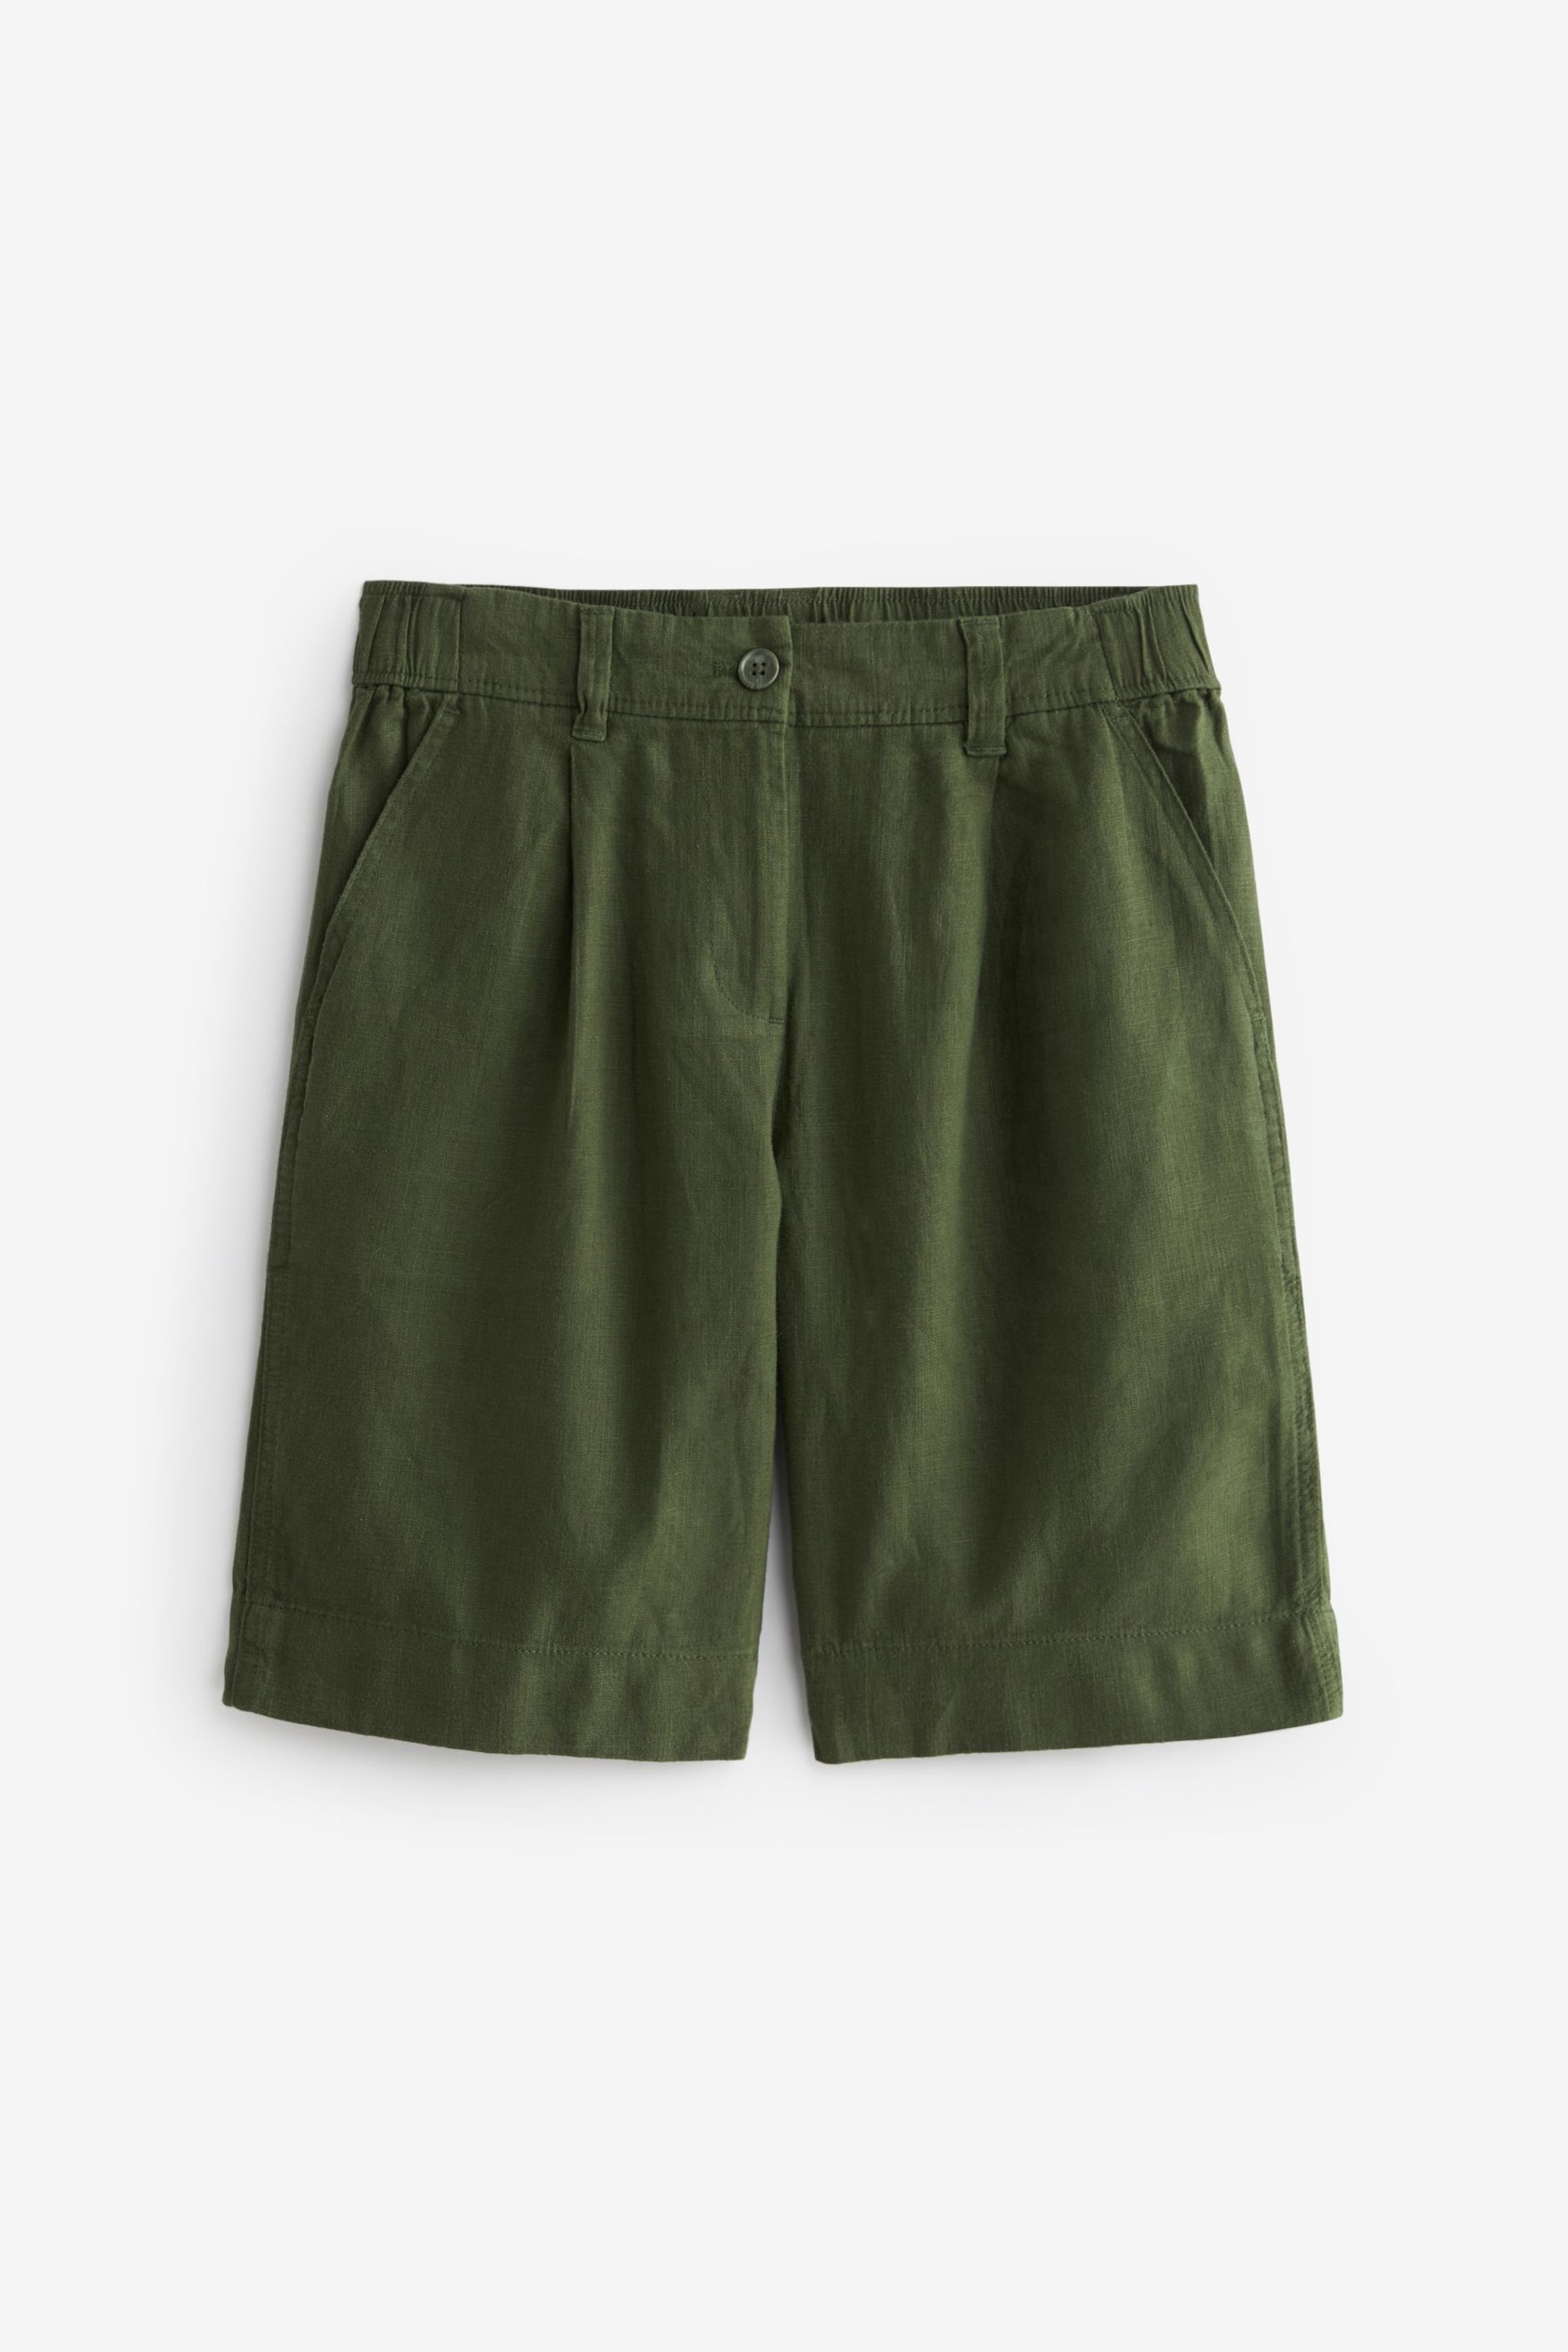 Khaki Green Linen Blend Knee Length Shorts - Image 4 of 5